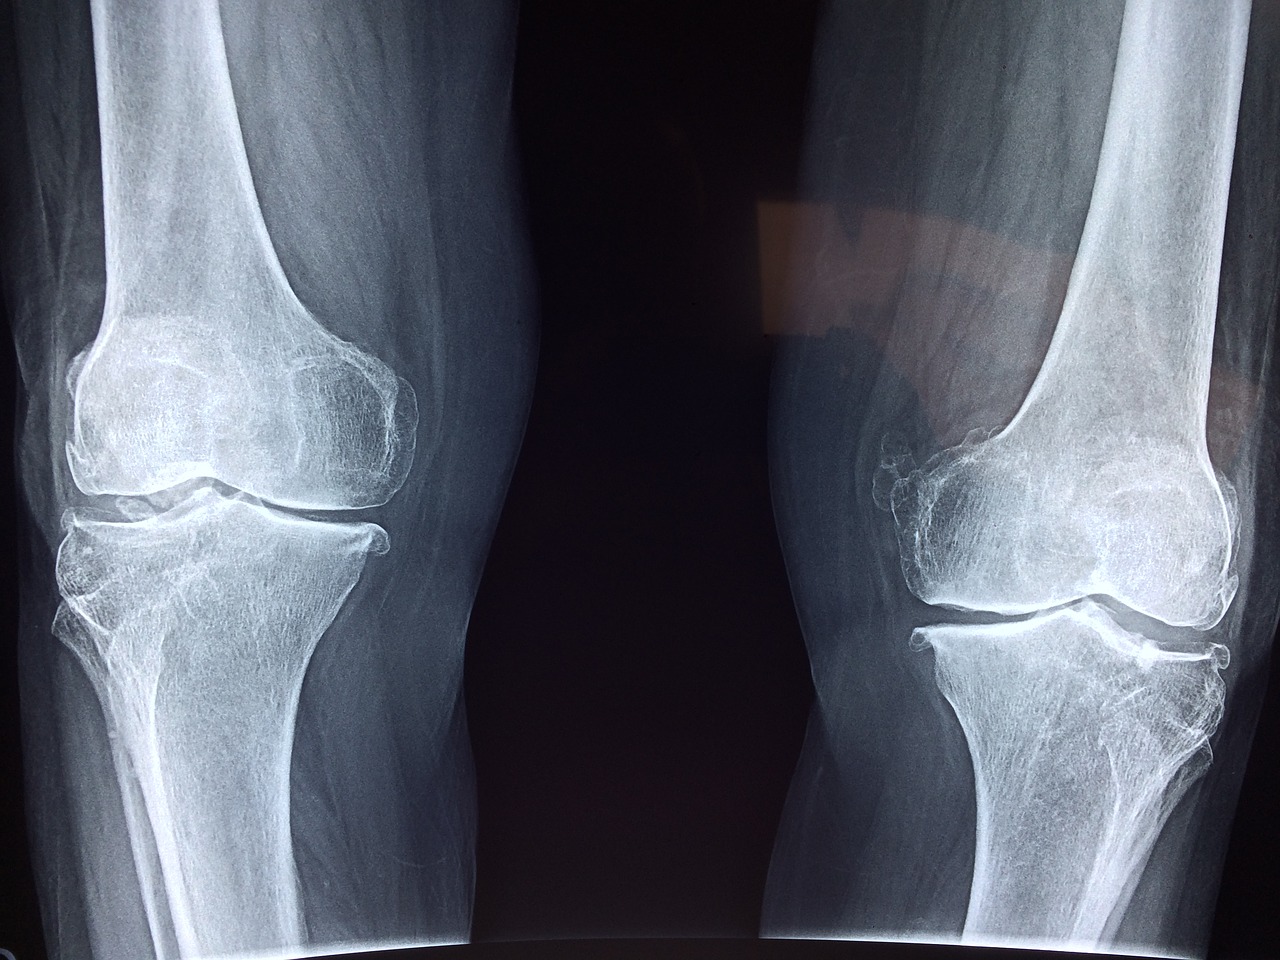 radiografía huesos piernas